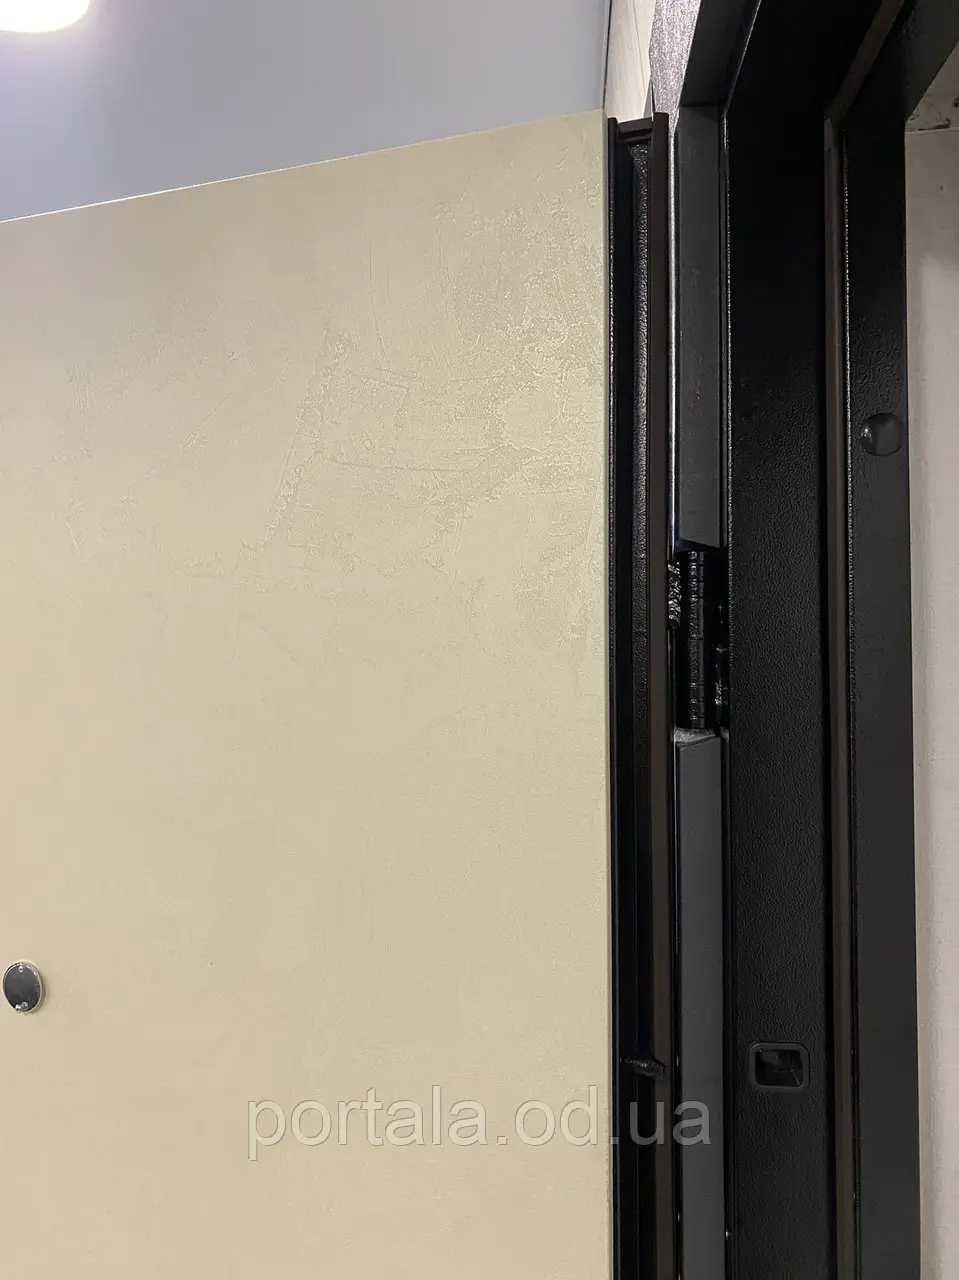 Входная дверь "Портала" (серия Модерн) ― модель Ромбус